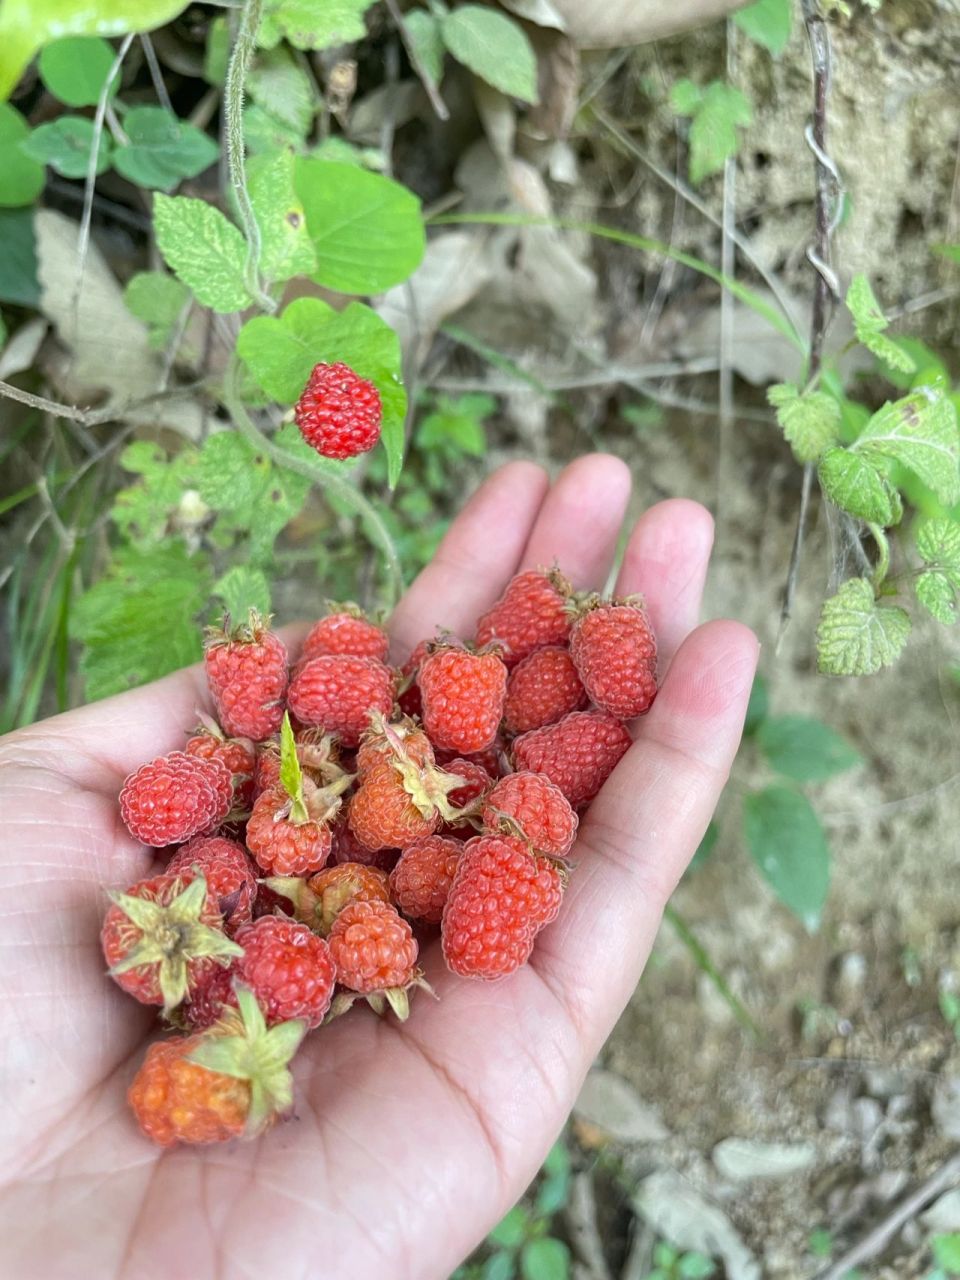 树莓,覆盆子,野草莓傻傻分不清 简单的说,地上长得那种是野草莓,树上